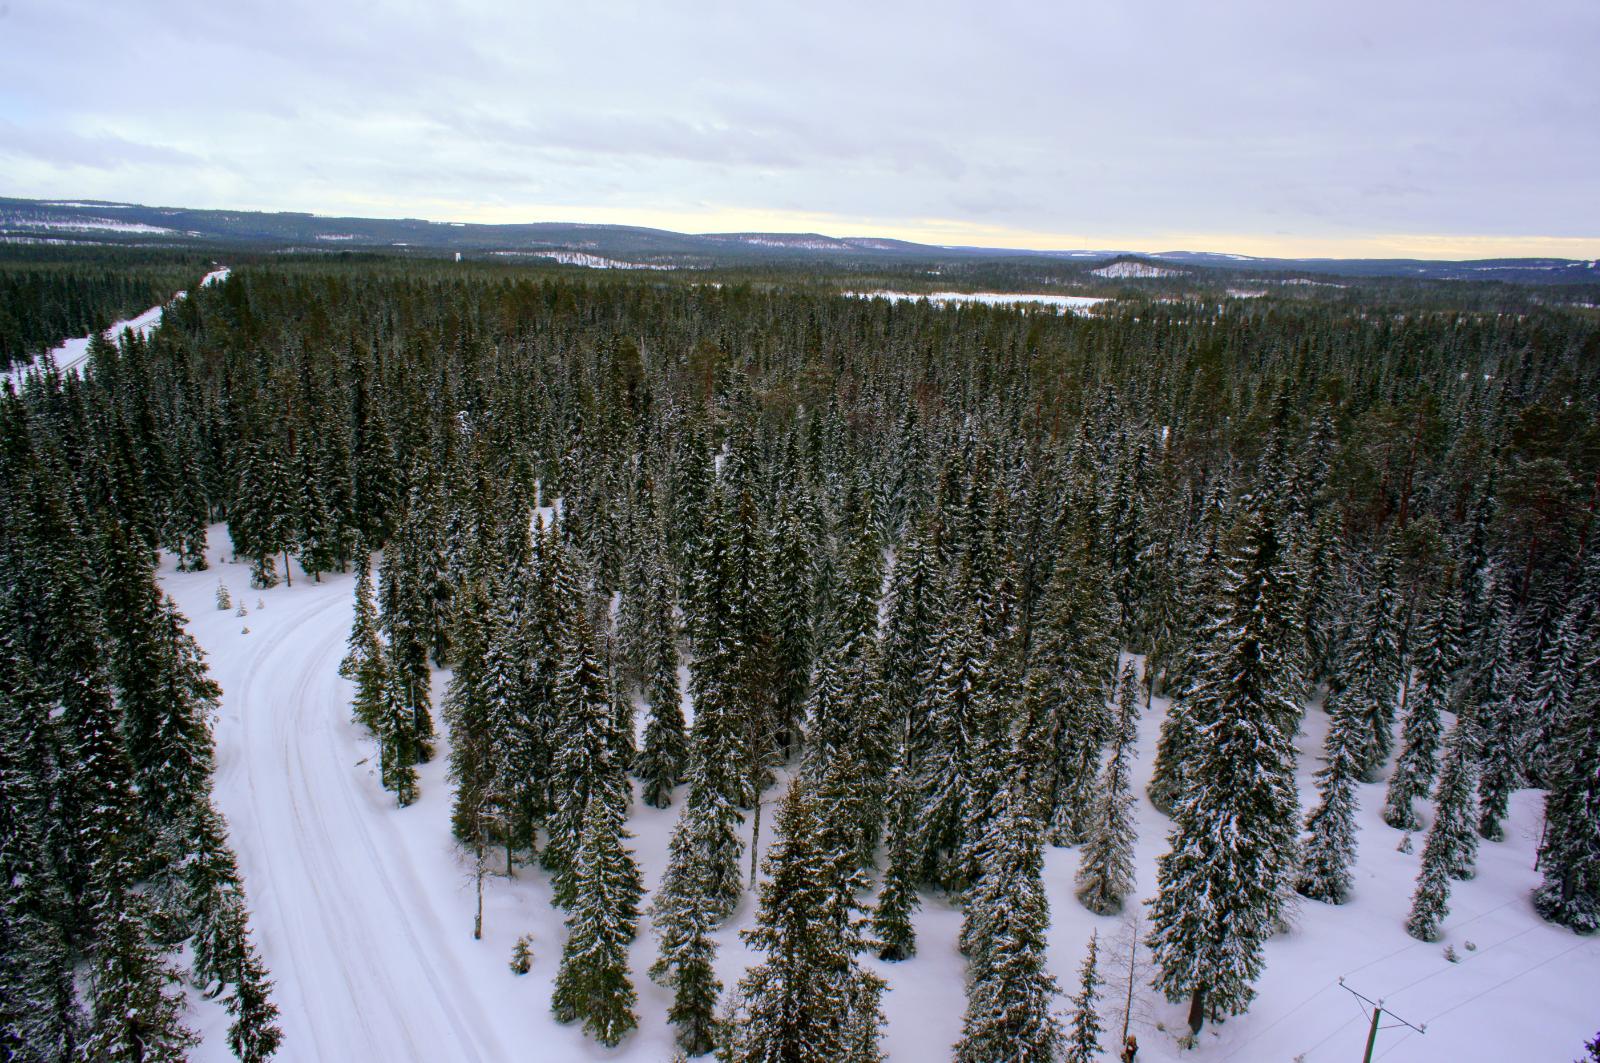 Hoidettu talvipolku kulkee lumipeitteisessä metsässä. Ilmakuva.